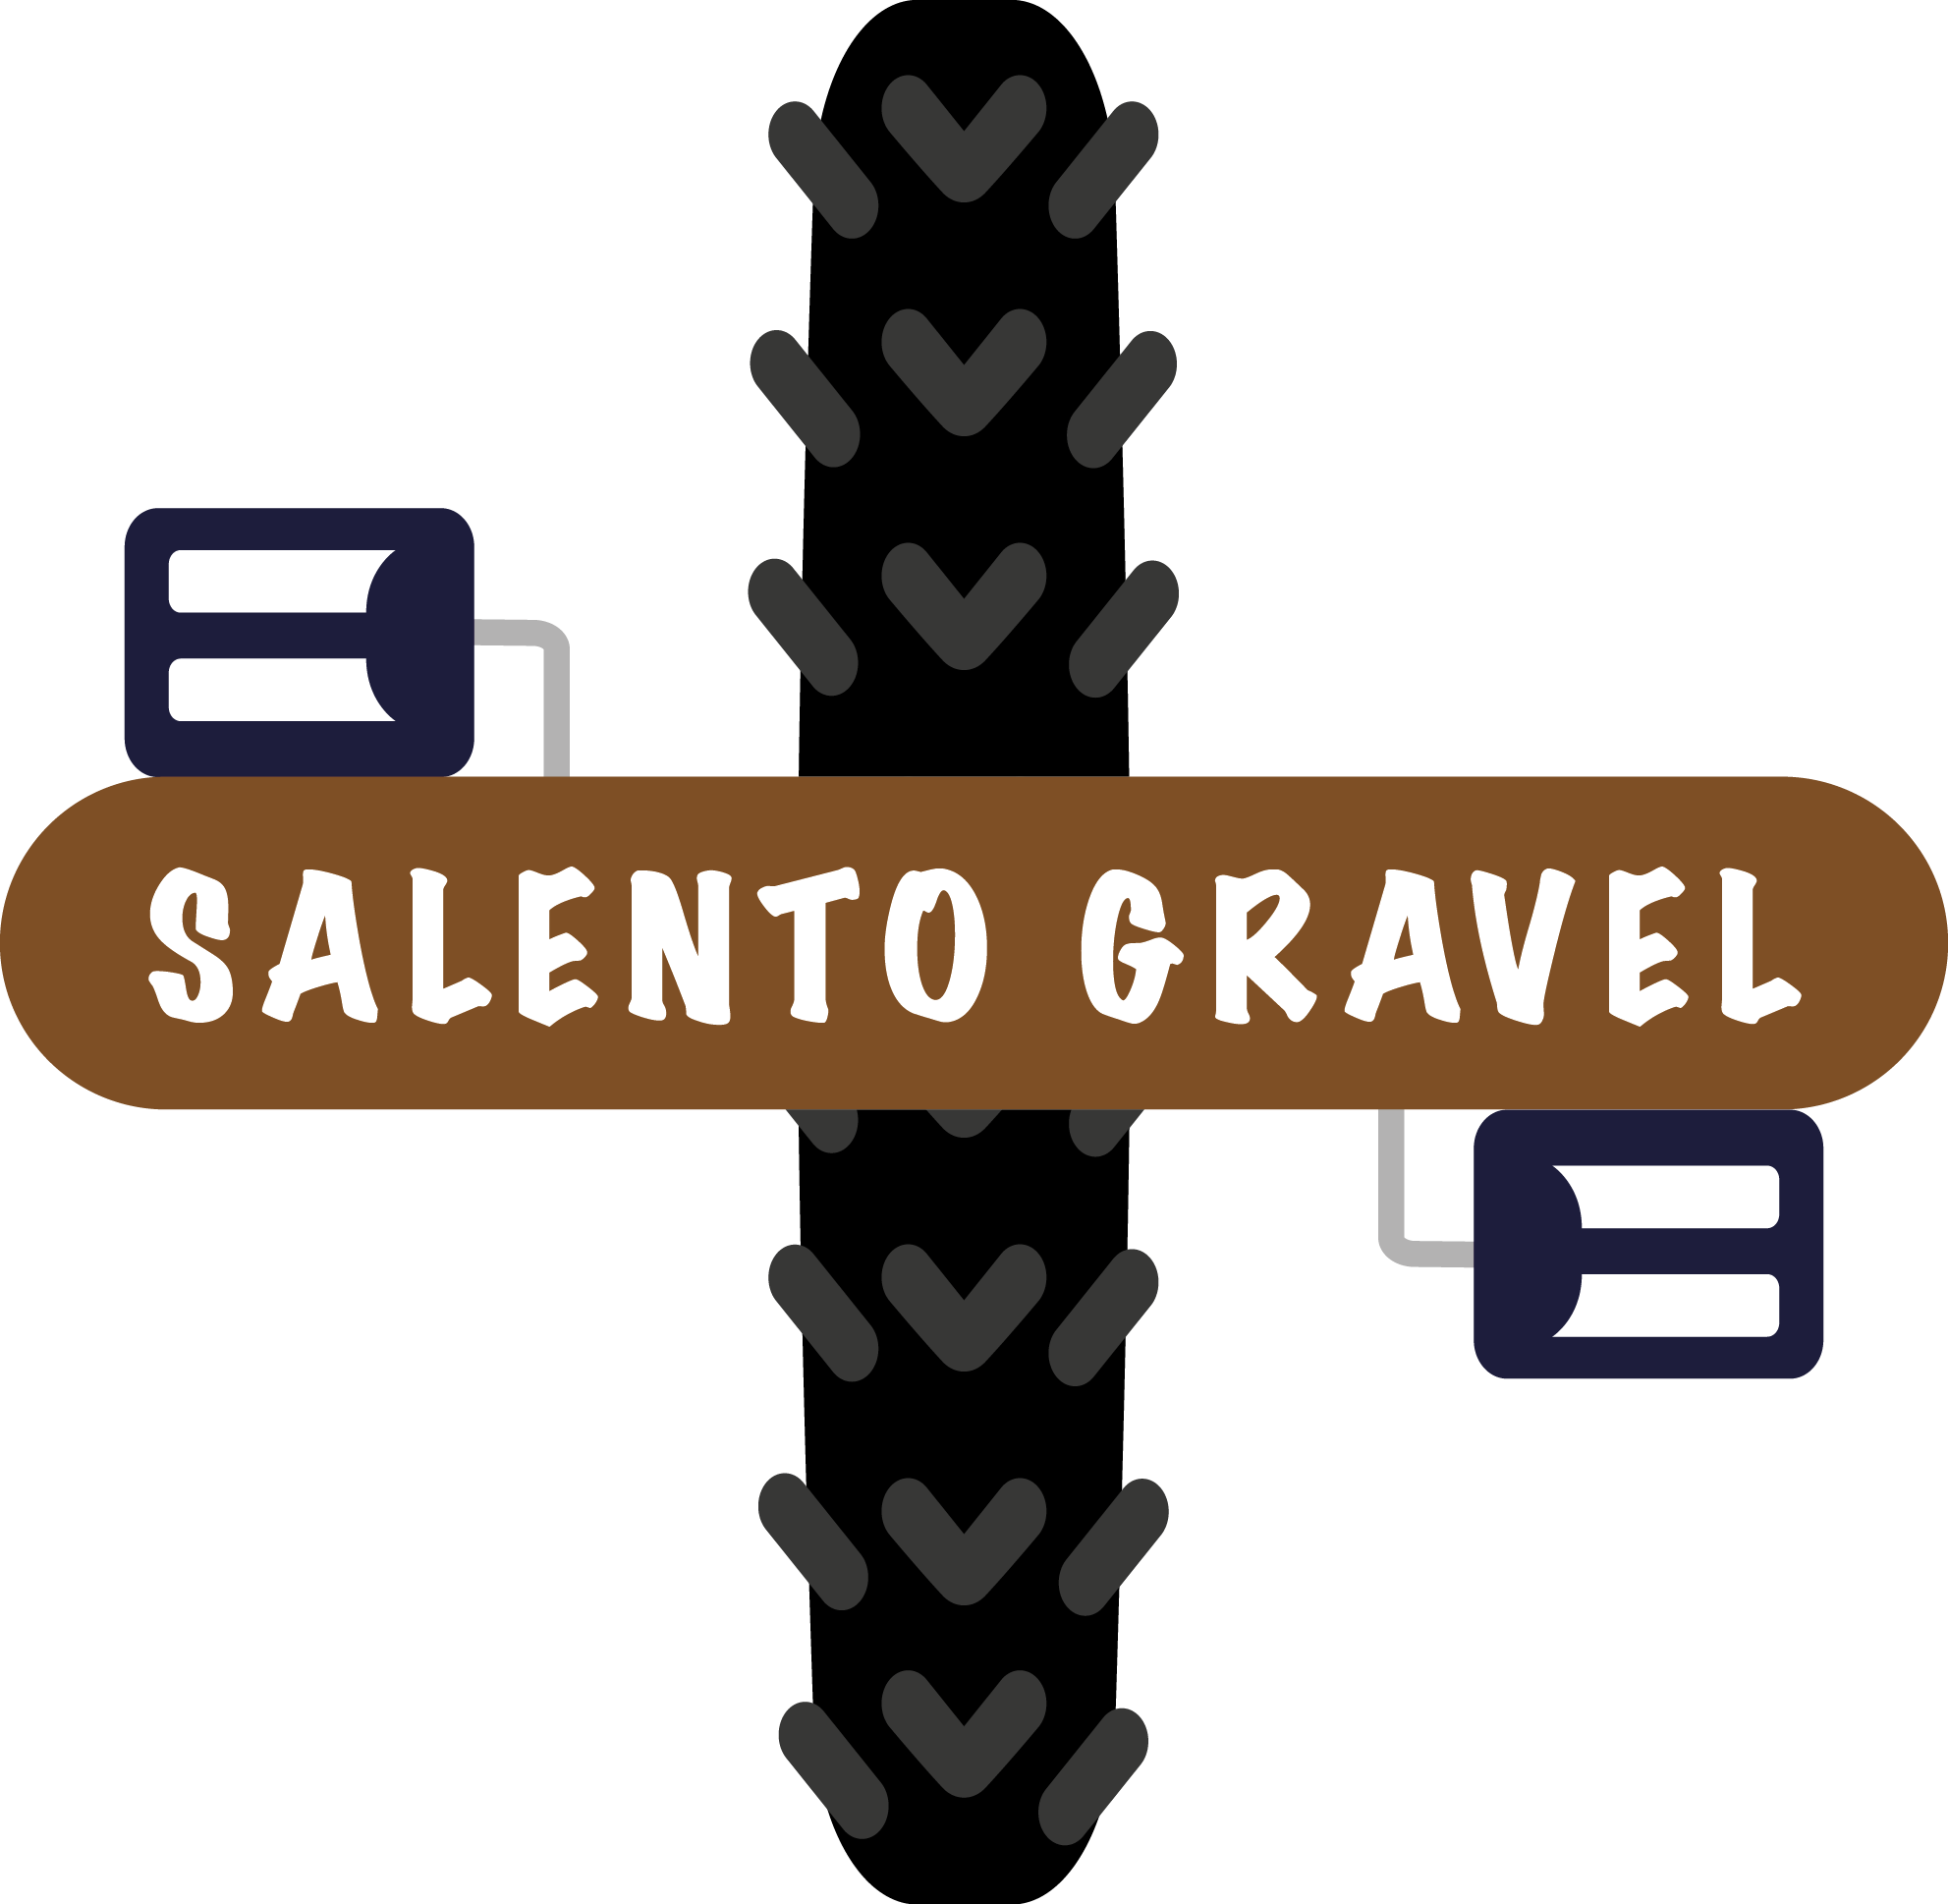 Salento Gravel